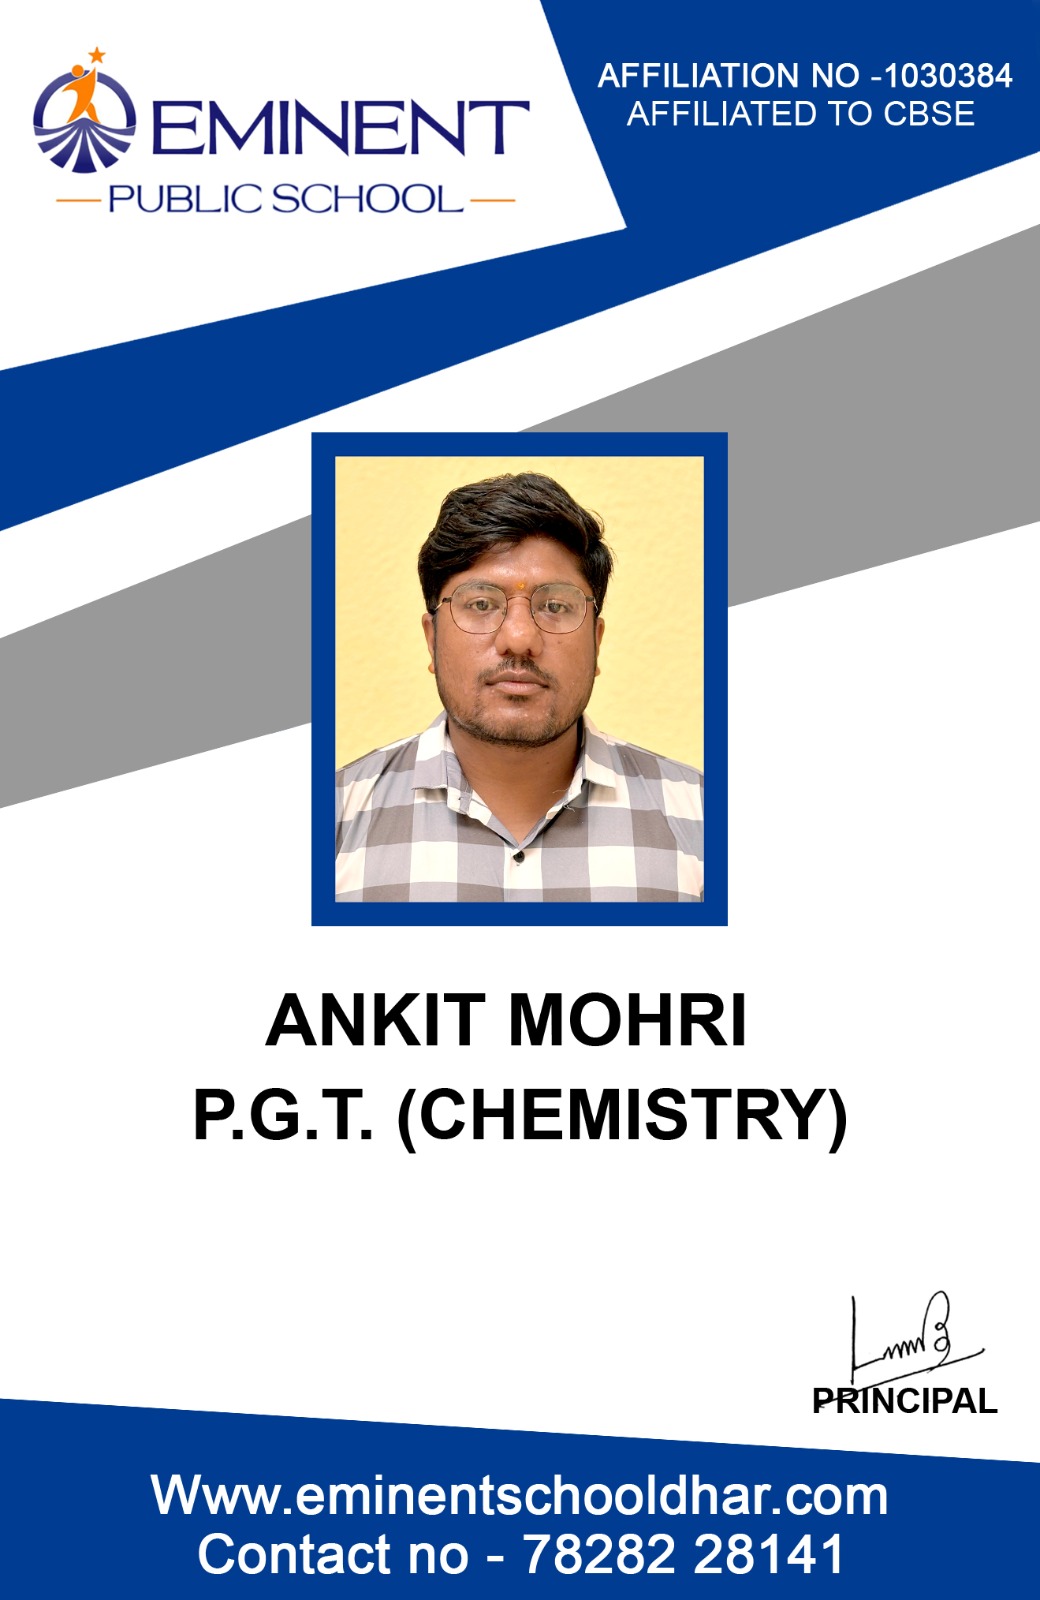 MR. ANKIT MOHRI